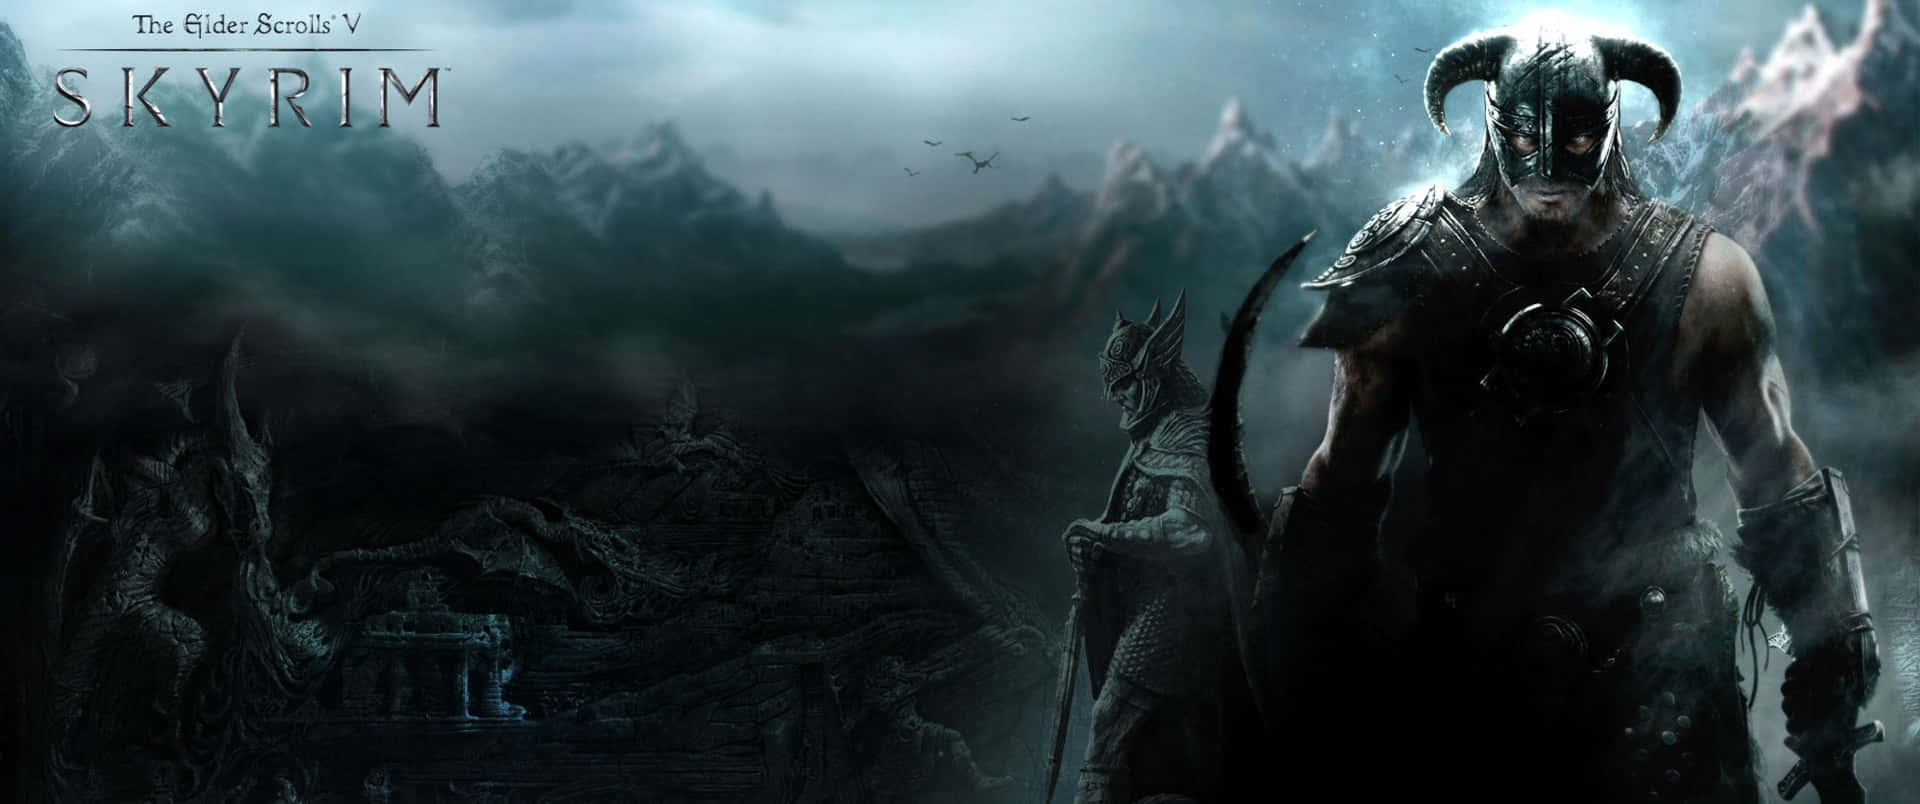 Goditiun'avventura Incredibile In The Elder Scrolls V Skyrim